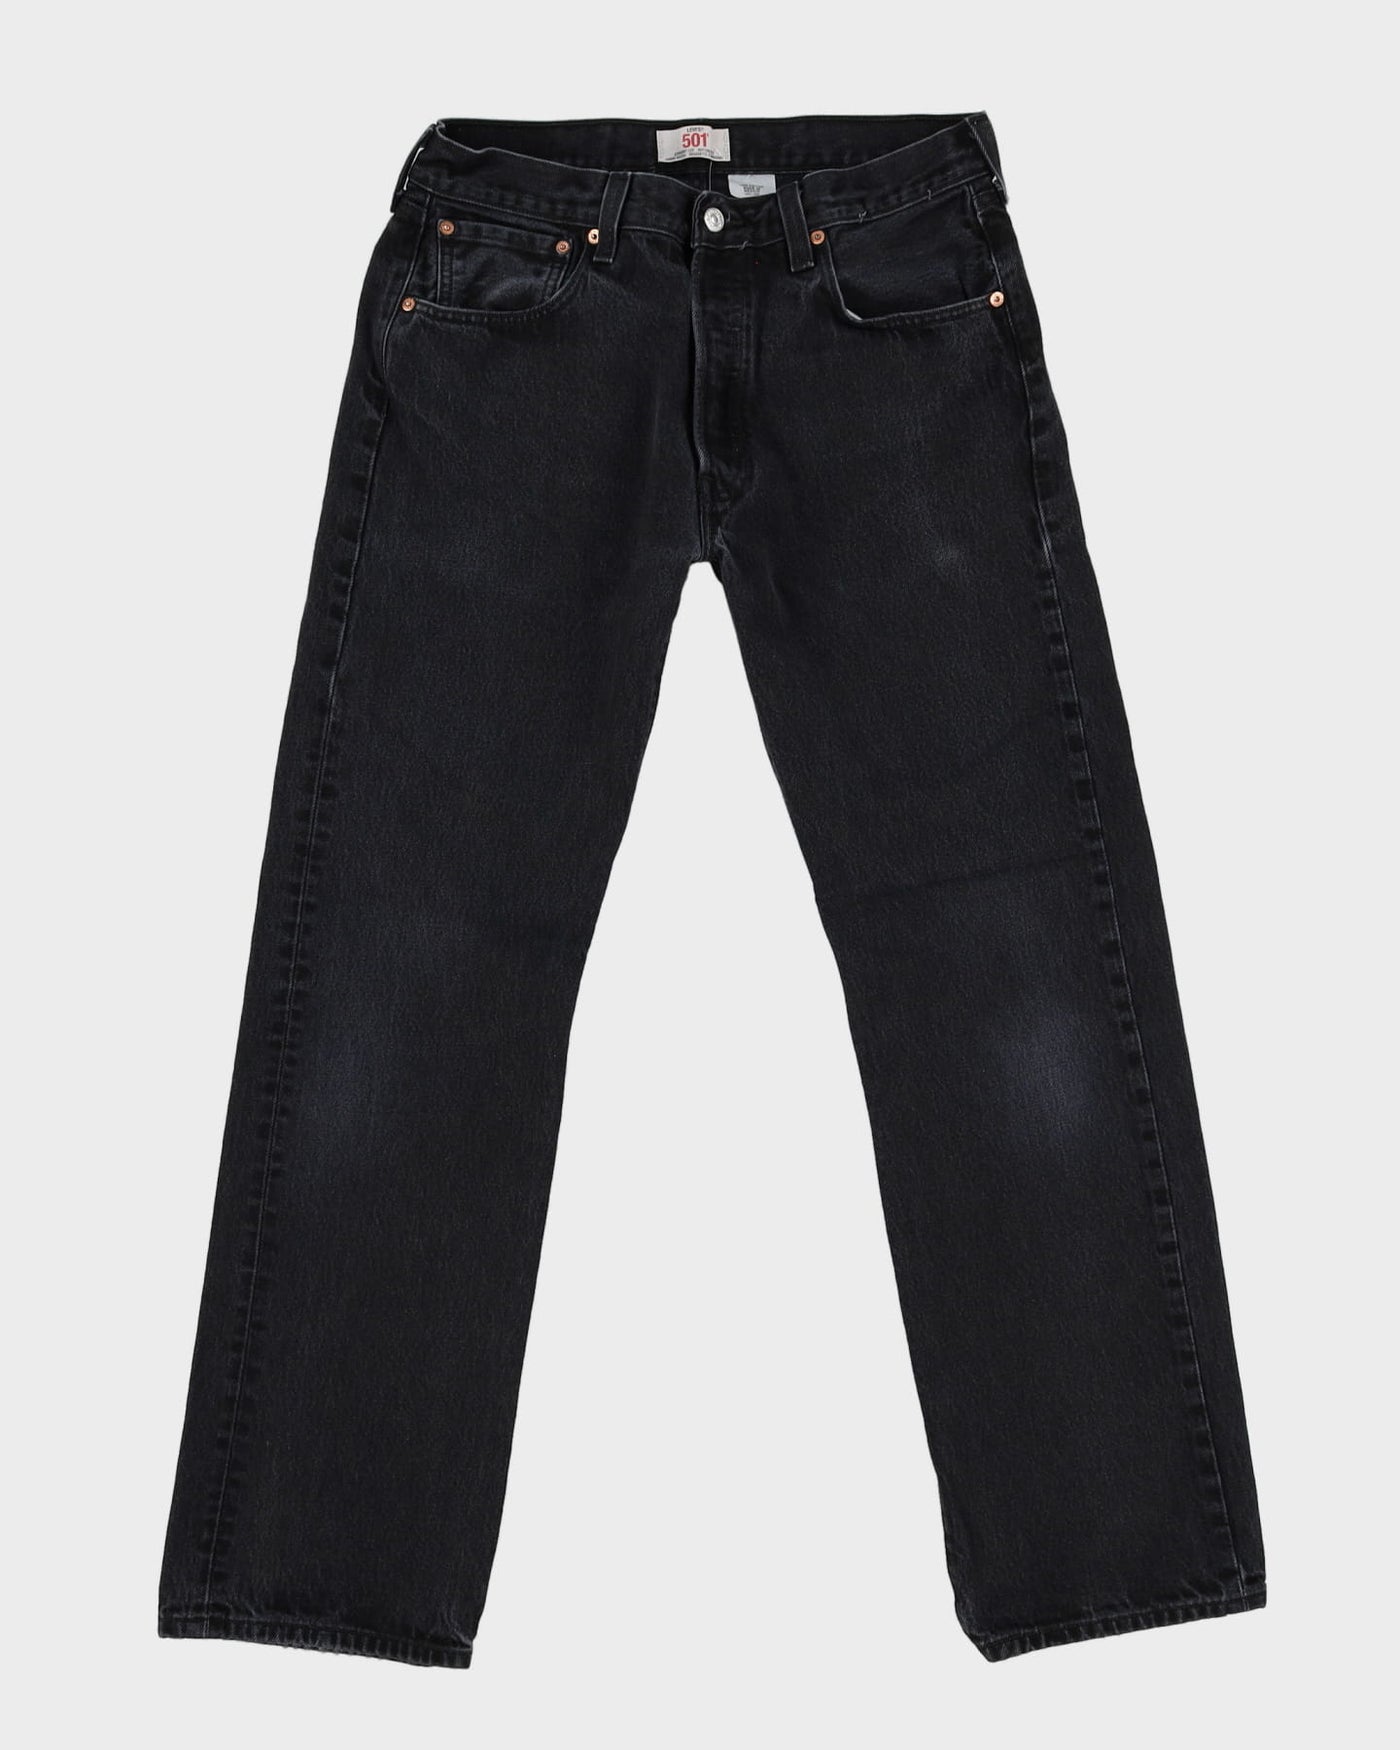 Levi's 501 Dark Wash Jeans - W34 L32